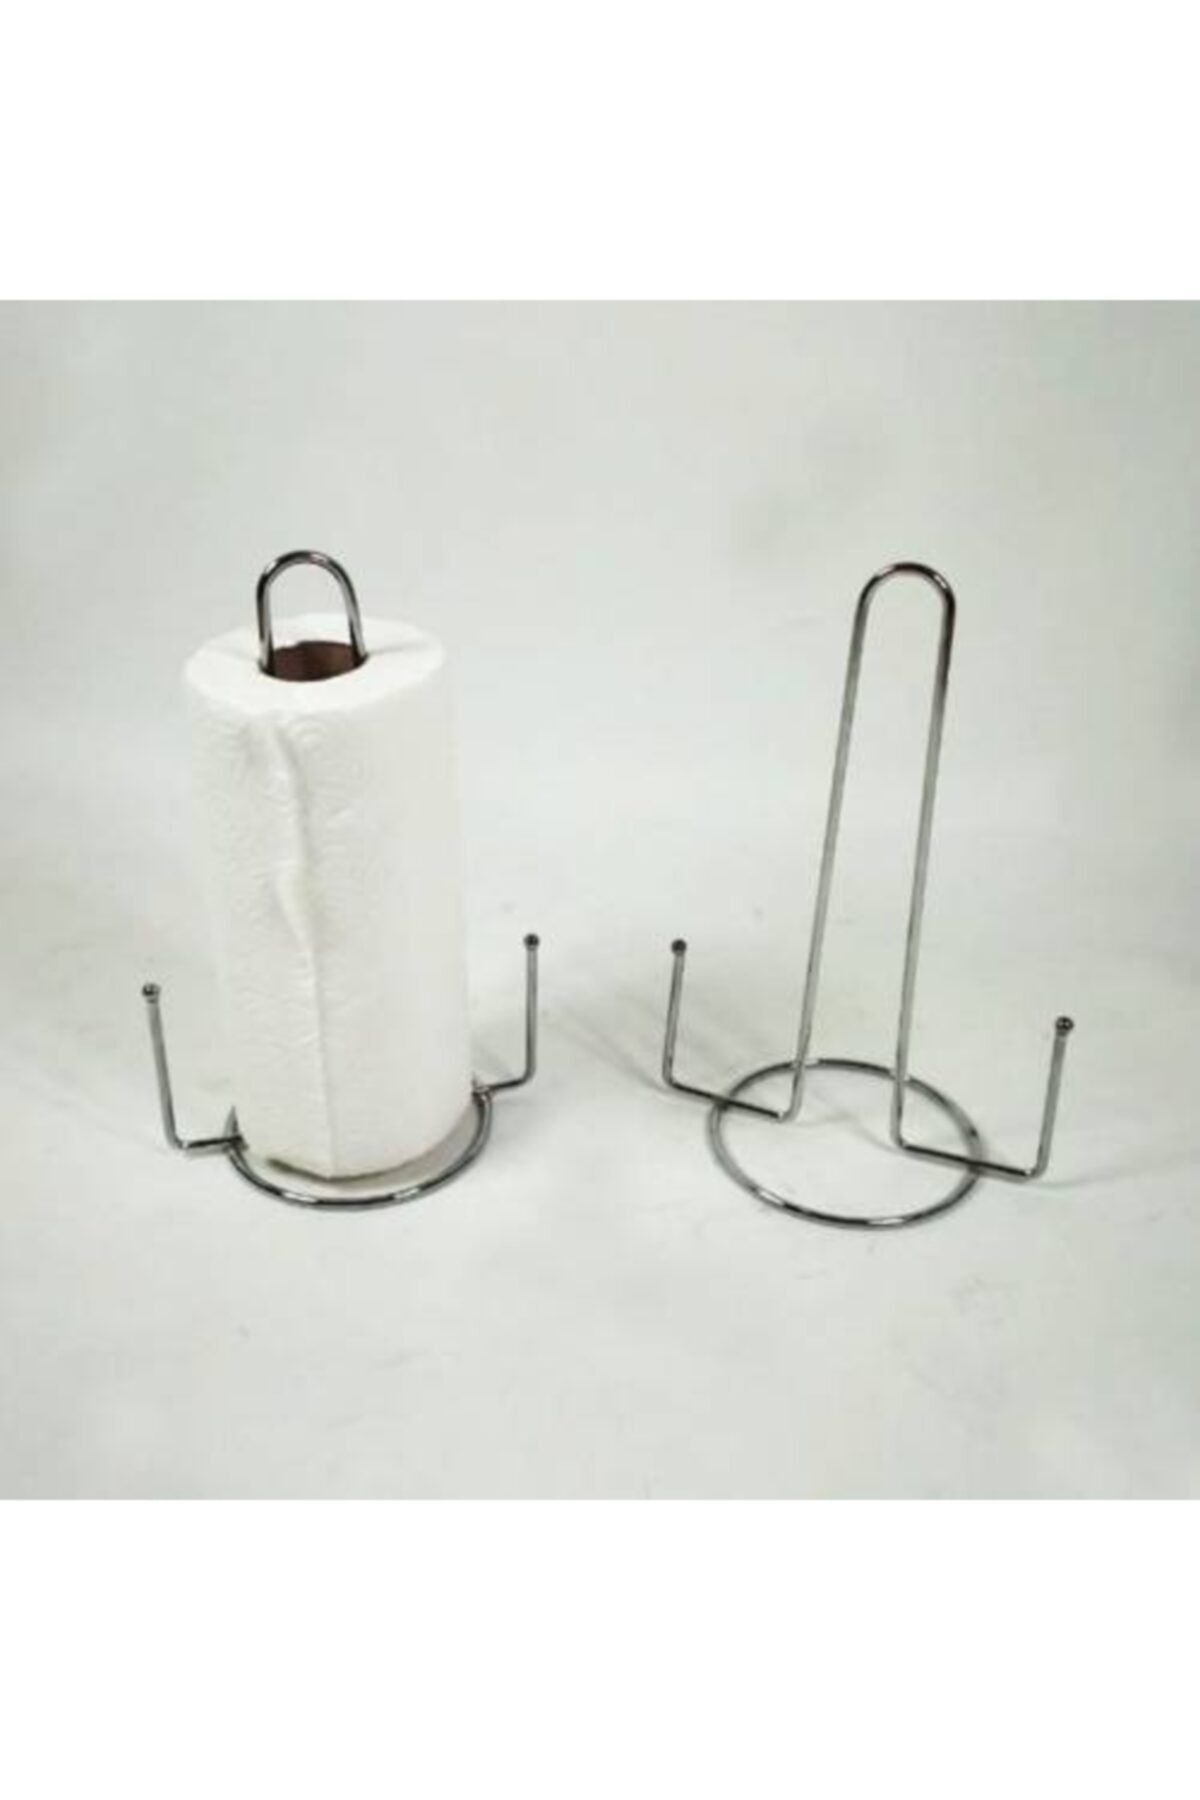 abnturk Krom Kağıt Havluluk Paslanmaz Çelik Tezgah Üstü Rulo Havlu Standı Kolay Taşınır